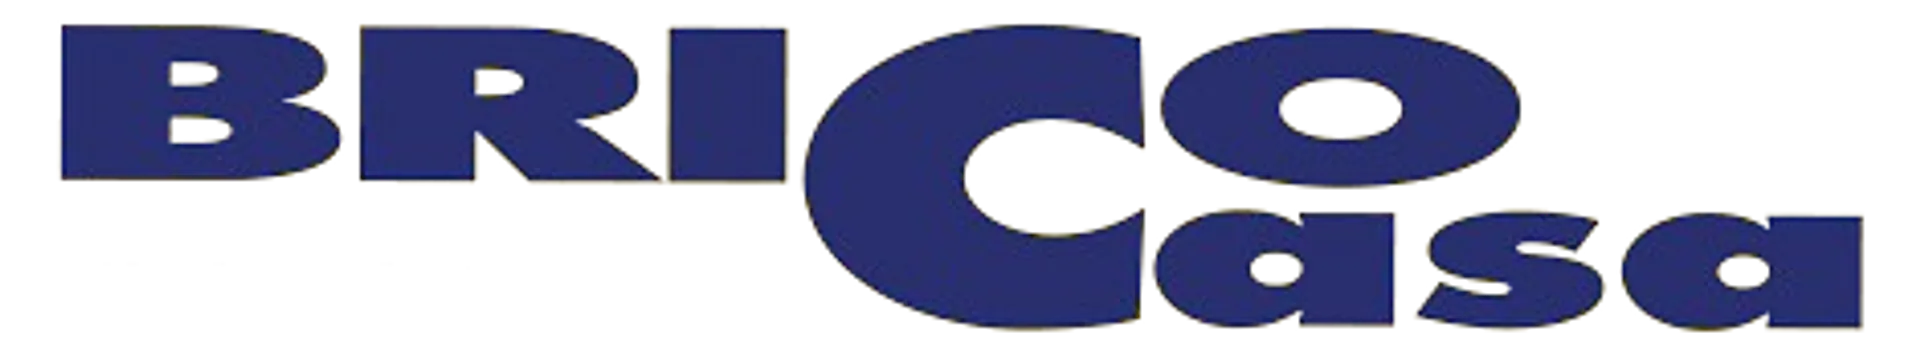 BRICOCASA logo del volantino attuale